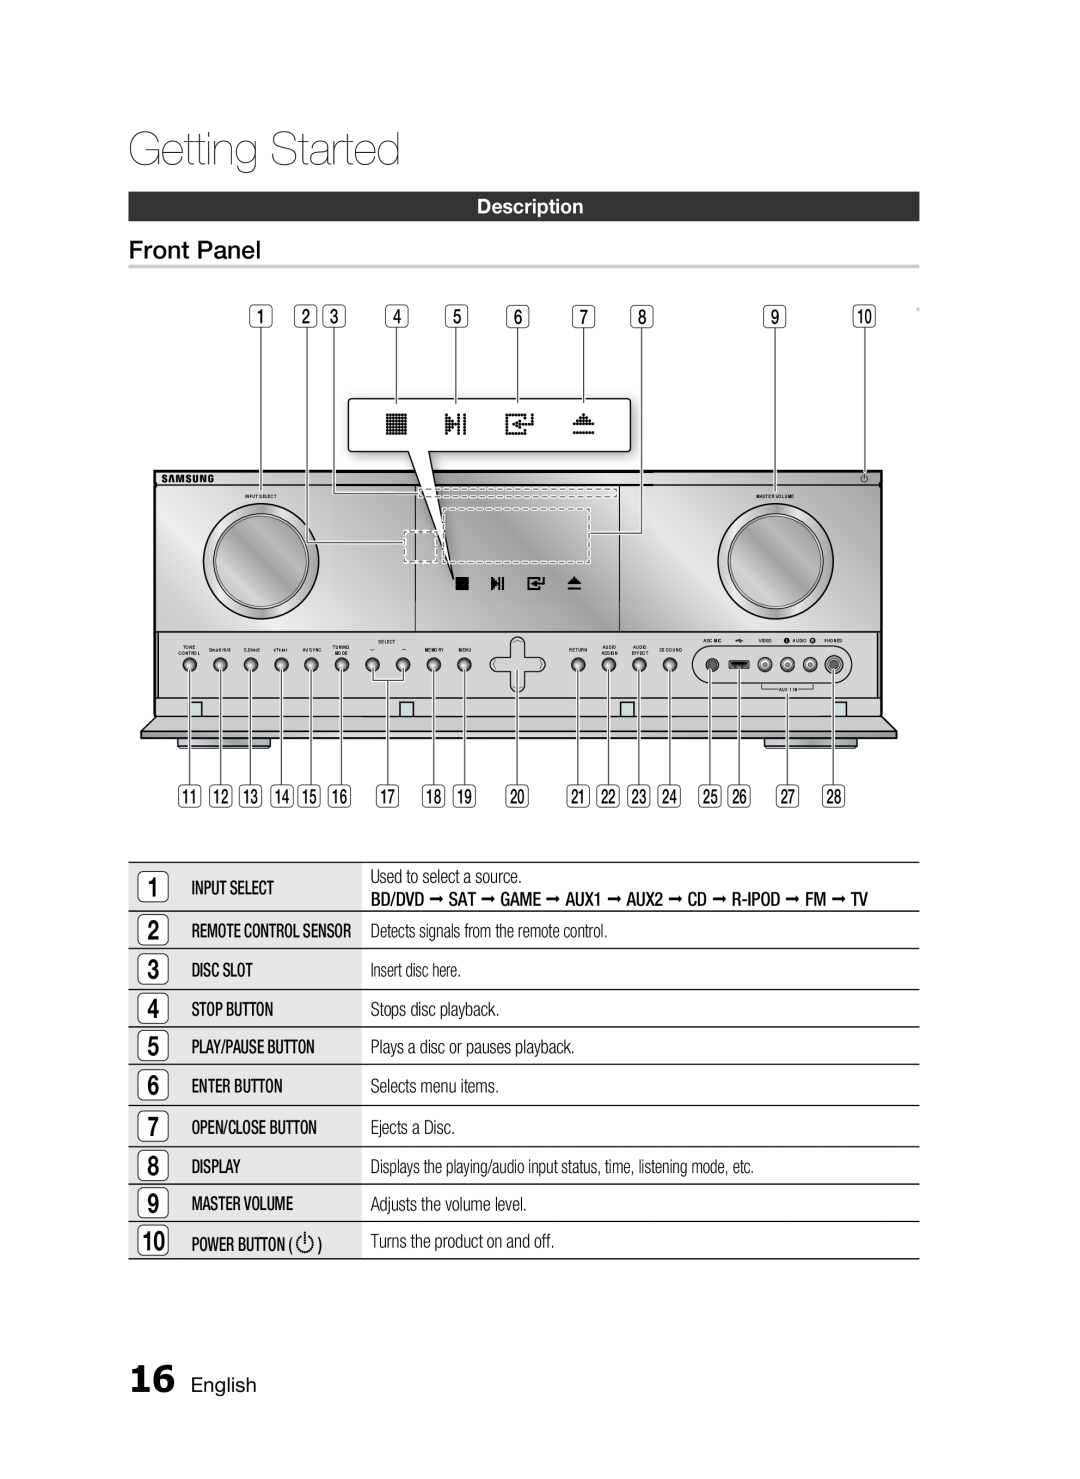 Samsung HW-D7000 user manual Front Panel, Description, Getting Started 